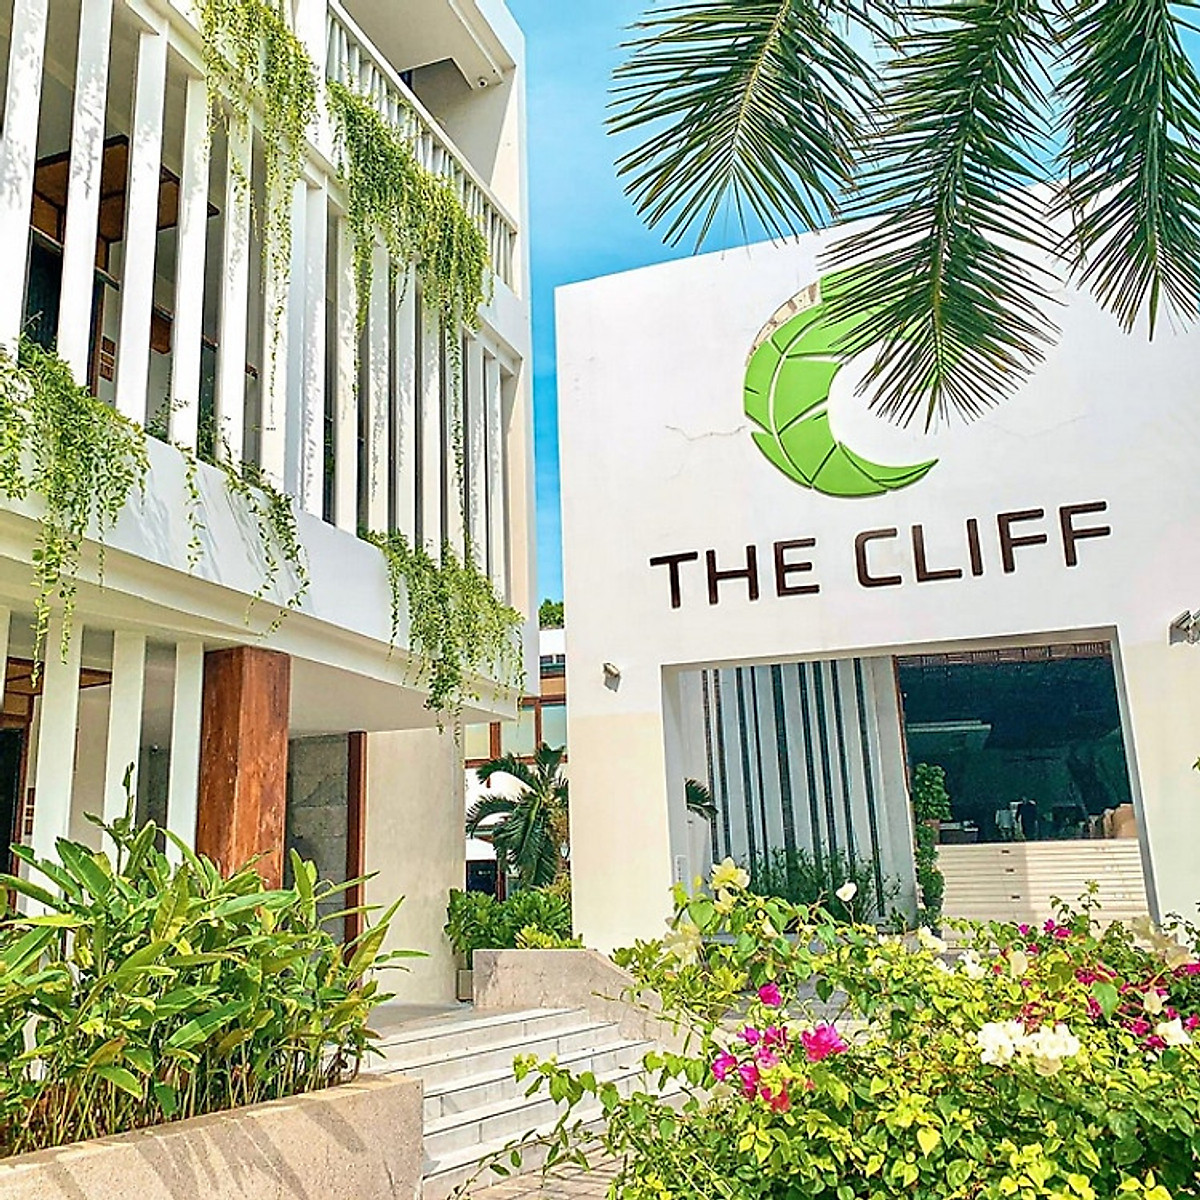 The Cliff Resort 4* Mũi Né - Buffet Sáng Free, Hồ Bơi, Bãi Biển Riêng, Không Gian Xanh Mát, Nghỉ Dưỡng Đẳng Cấp Phan Thiết Và Nhiều Dịch Vụ Hấp Dẫn